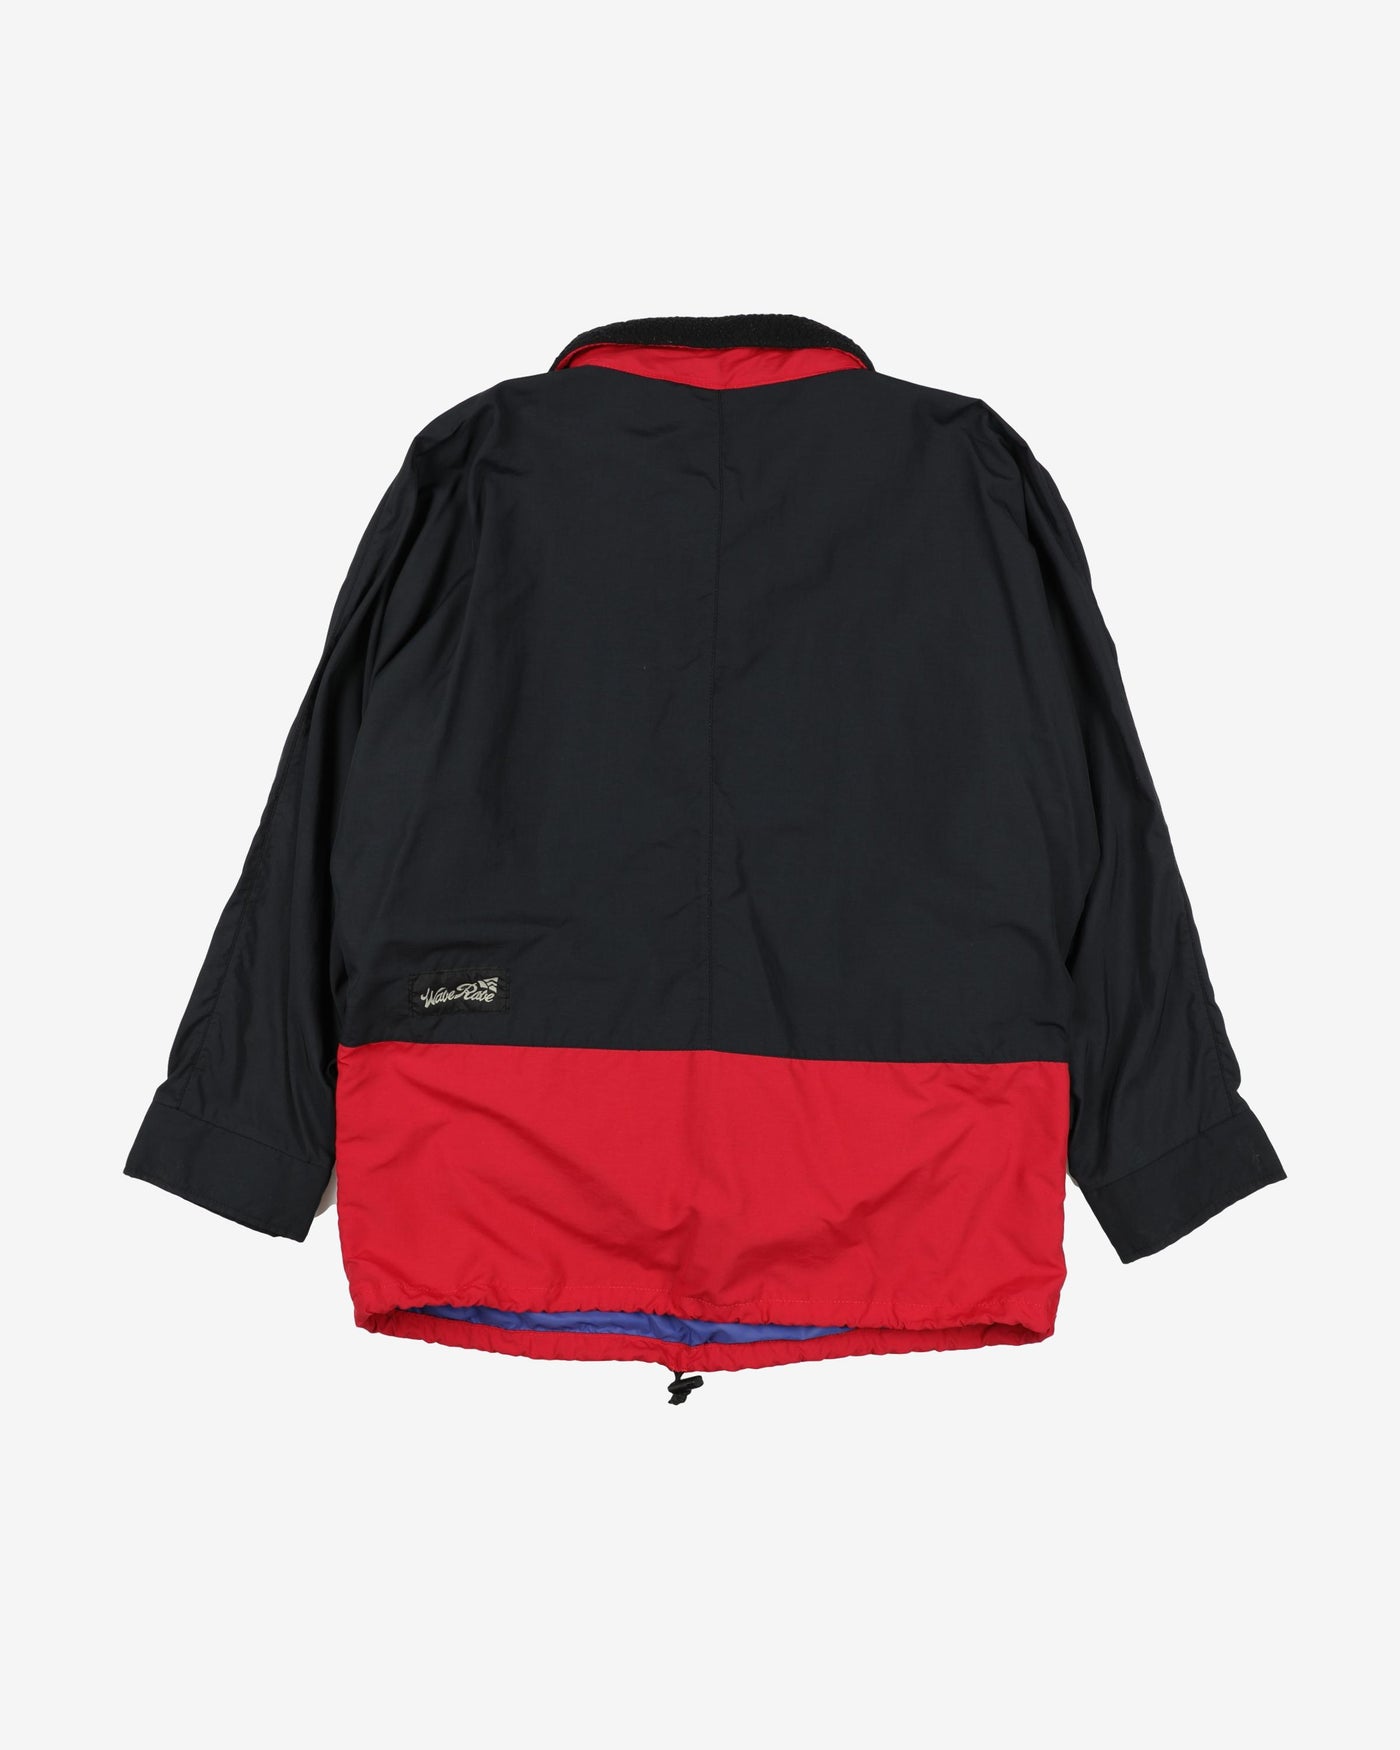 Vintage Red Wave Rave Jacket - L